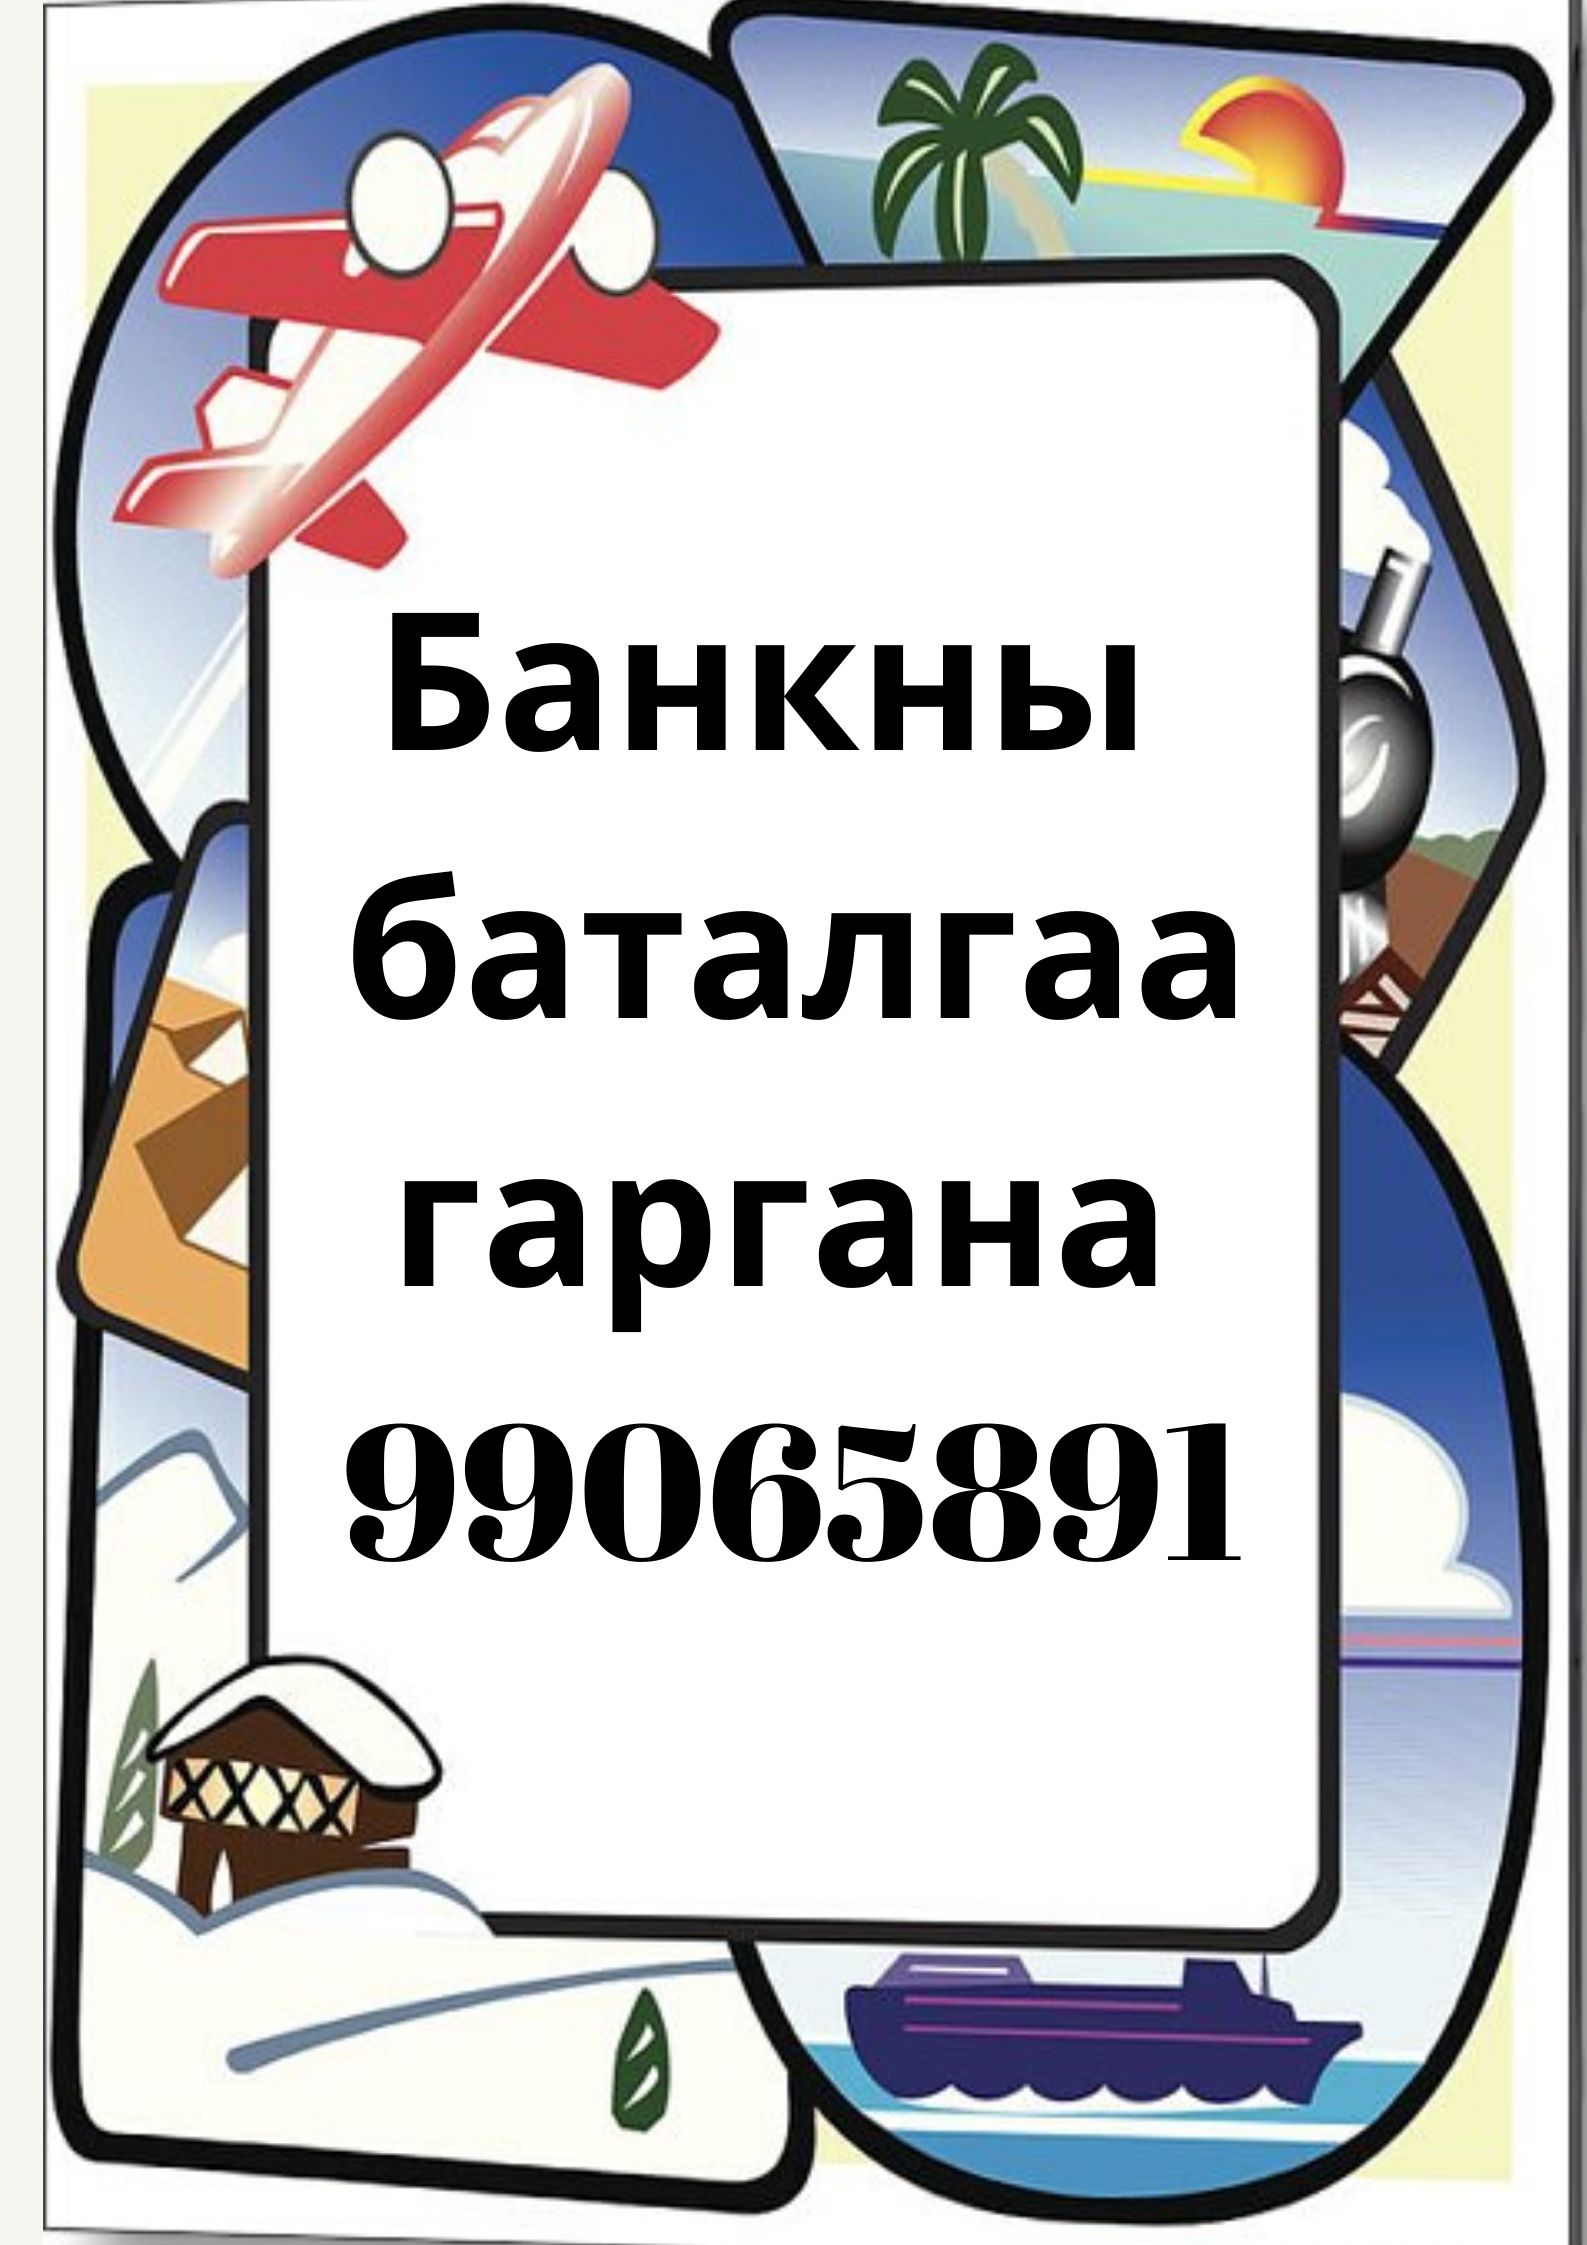 БАНКНЫ БАТАЛГАА ШУУРХАЙ  ГАРГАЖ БАЙНА  99065891